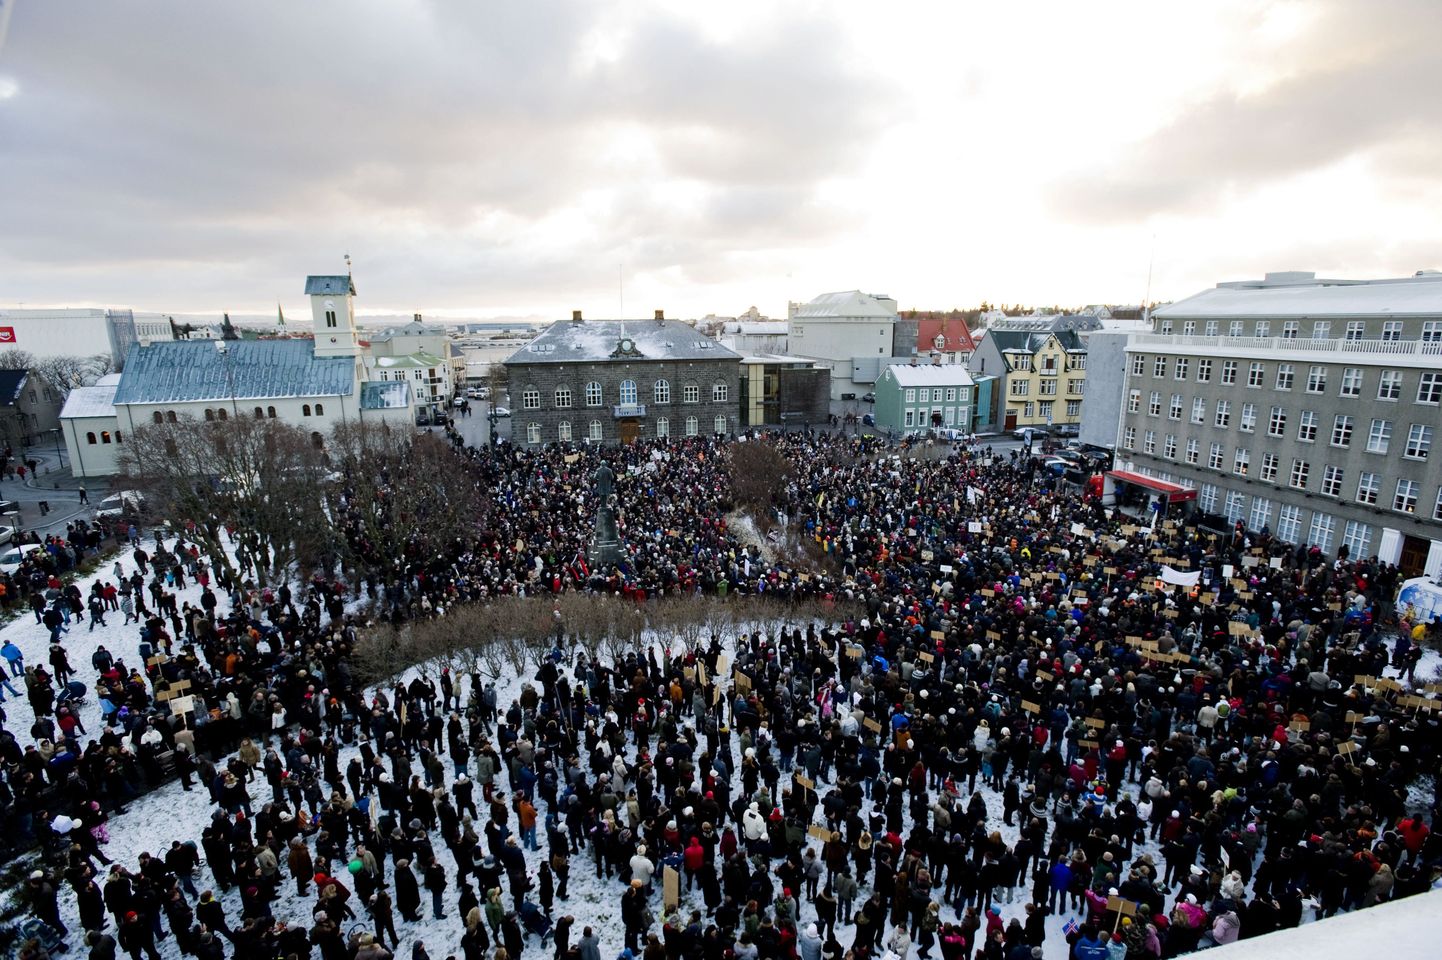 Tuhanded islandlased Reykjavikis 15. novembril toimunud meeleavaldusel, kus nõuti valitsuse tagasiastumist.